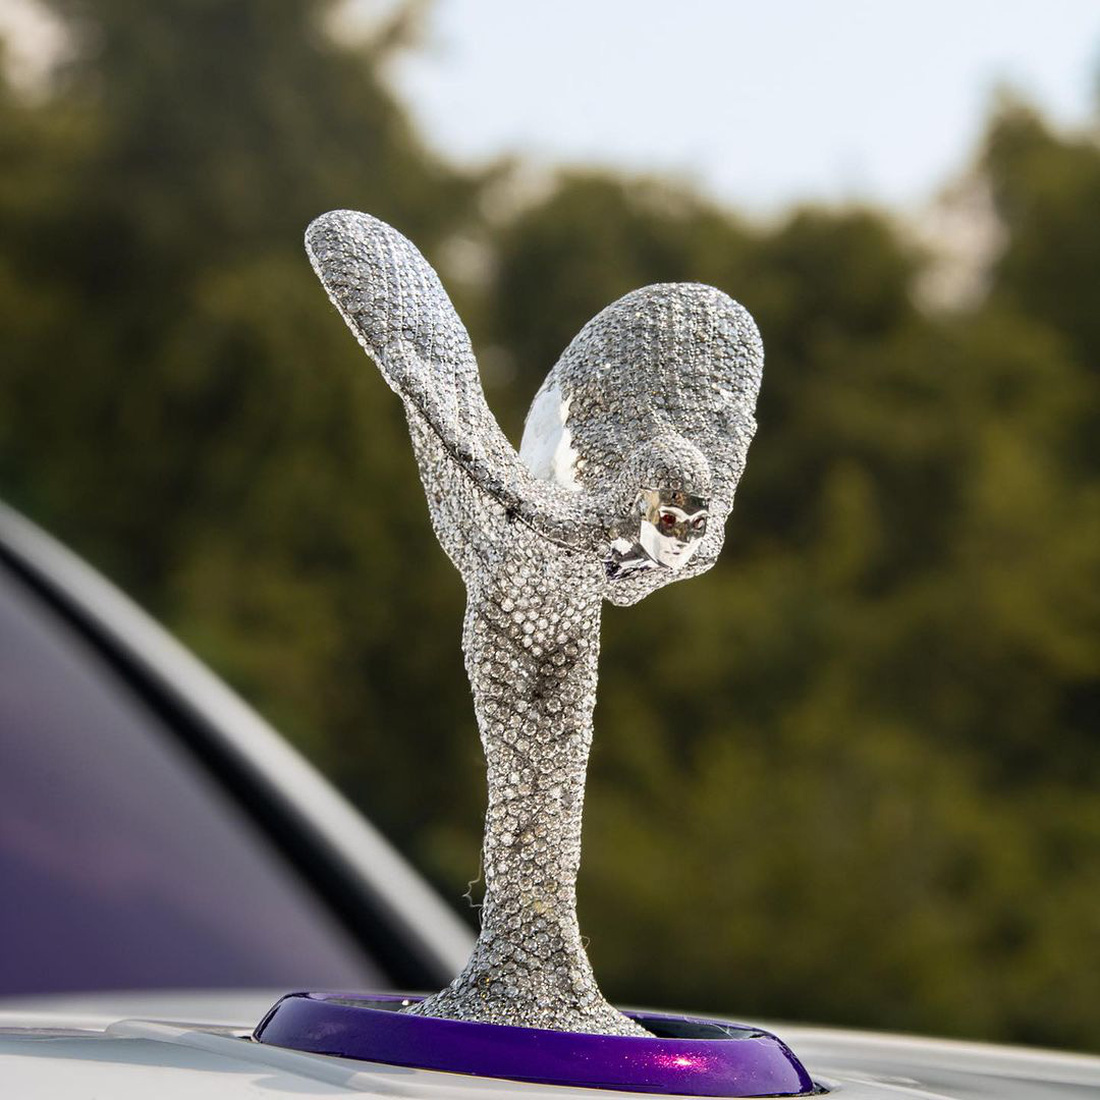 Chủ xe nổi tiếng đam mê kim cương nên việc loại đá quý này được đính cho biểu tượng Spirit of Ecstasy không quá bất ngờ - Ảnh: Car Effex